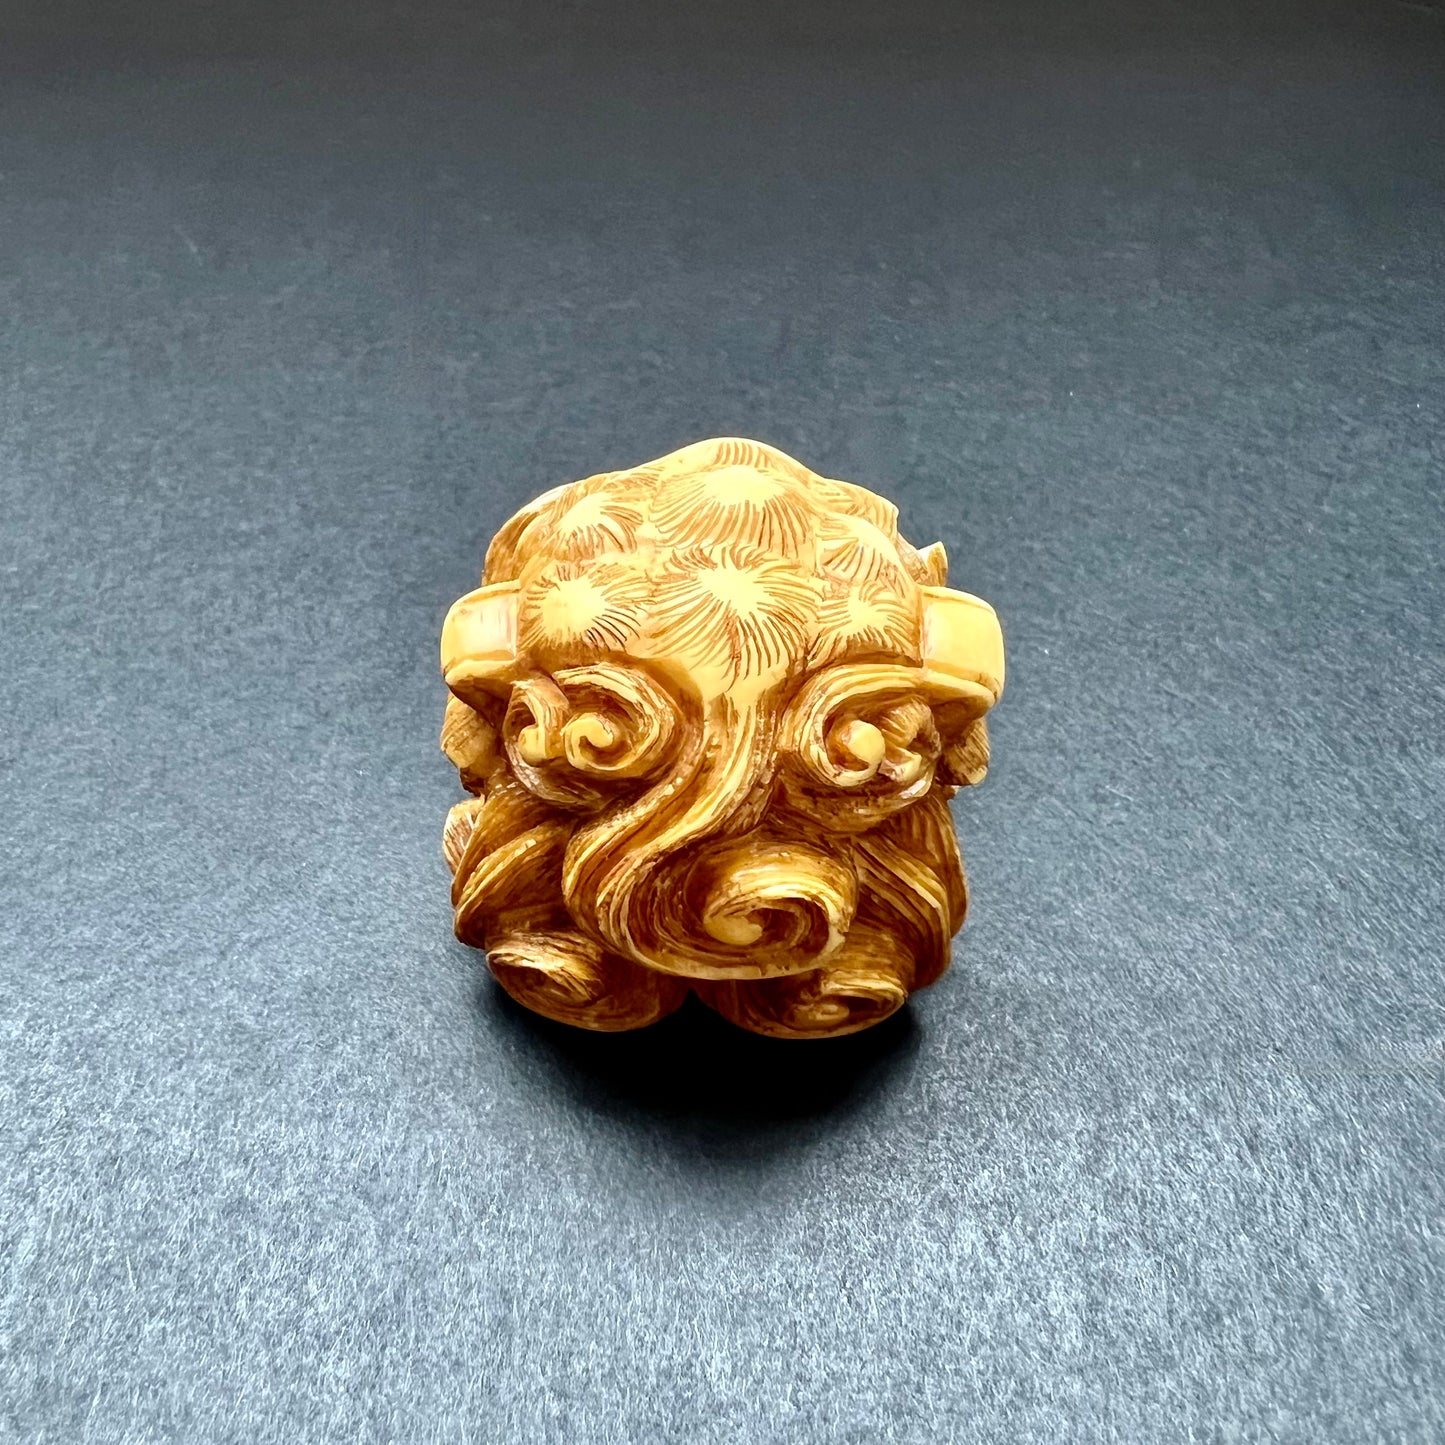 罕见的江户晚期至明治早期象牙狮子面具根付，由 Masakazu 签名。